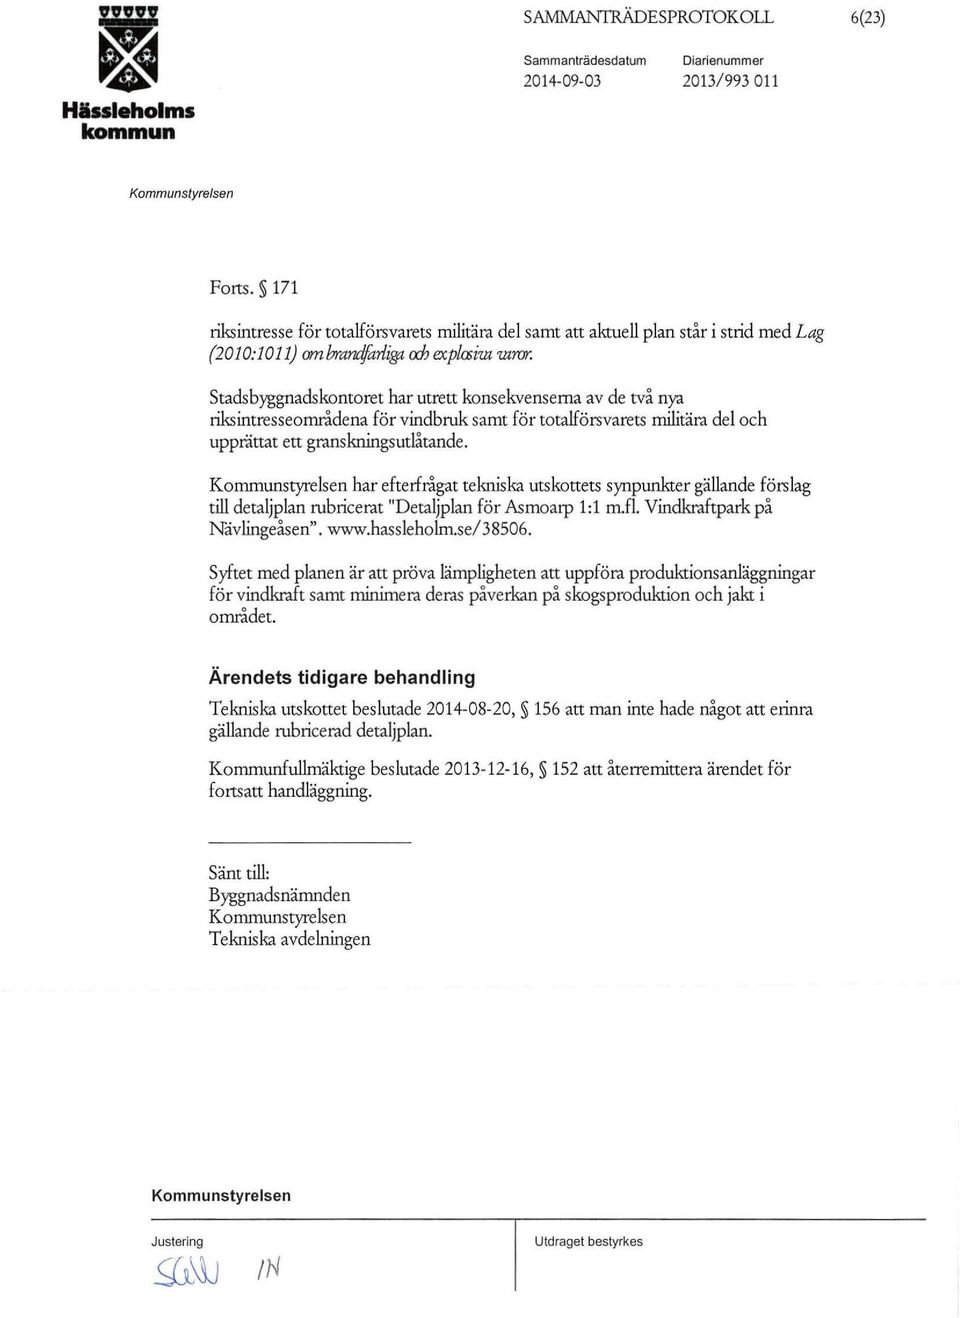 har efterfrågat tekniska utskottets synpunkter gällande förslag till detaljplan rubricerat "Detaljplan för Asmoarp 1:1 m.fl. Vindkraftpark på Nåvlingeåsen". www.hassleholm.se/38506.